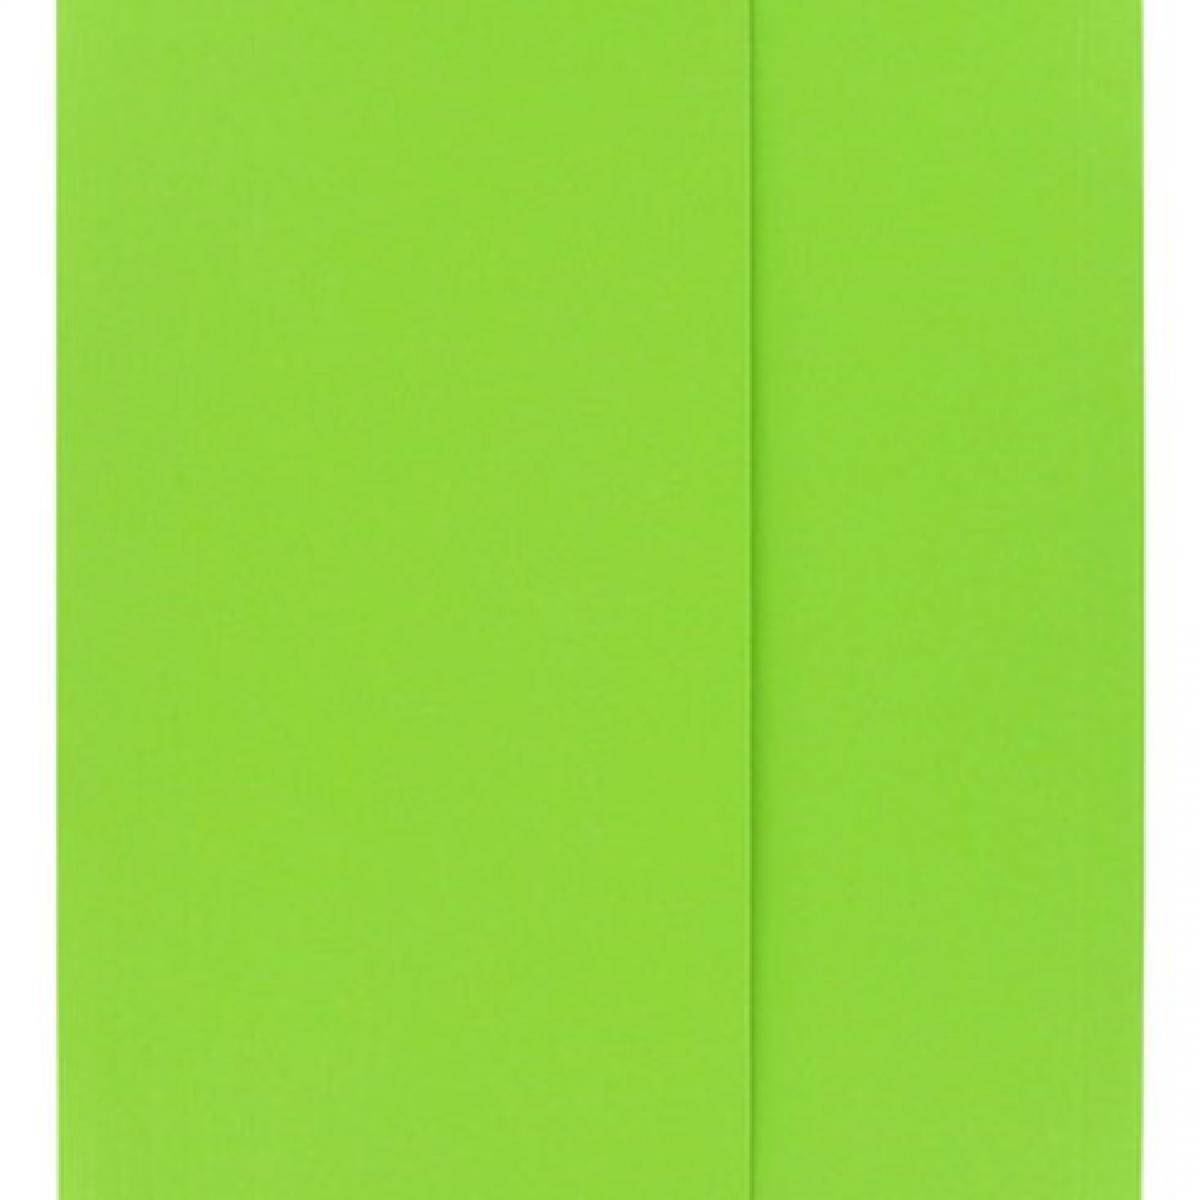 Oxford - Chemise à soufflet 25 x 32 cm vert vif - Paquet de 50 - Accessoires Bureau